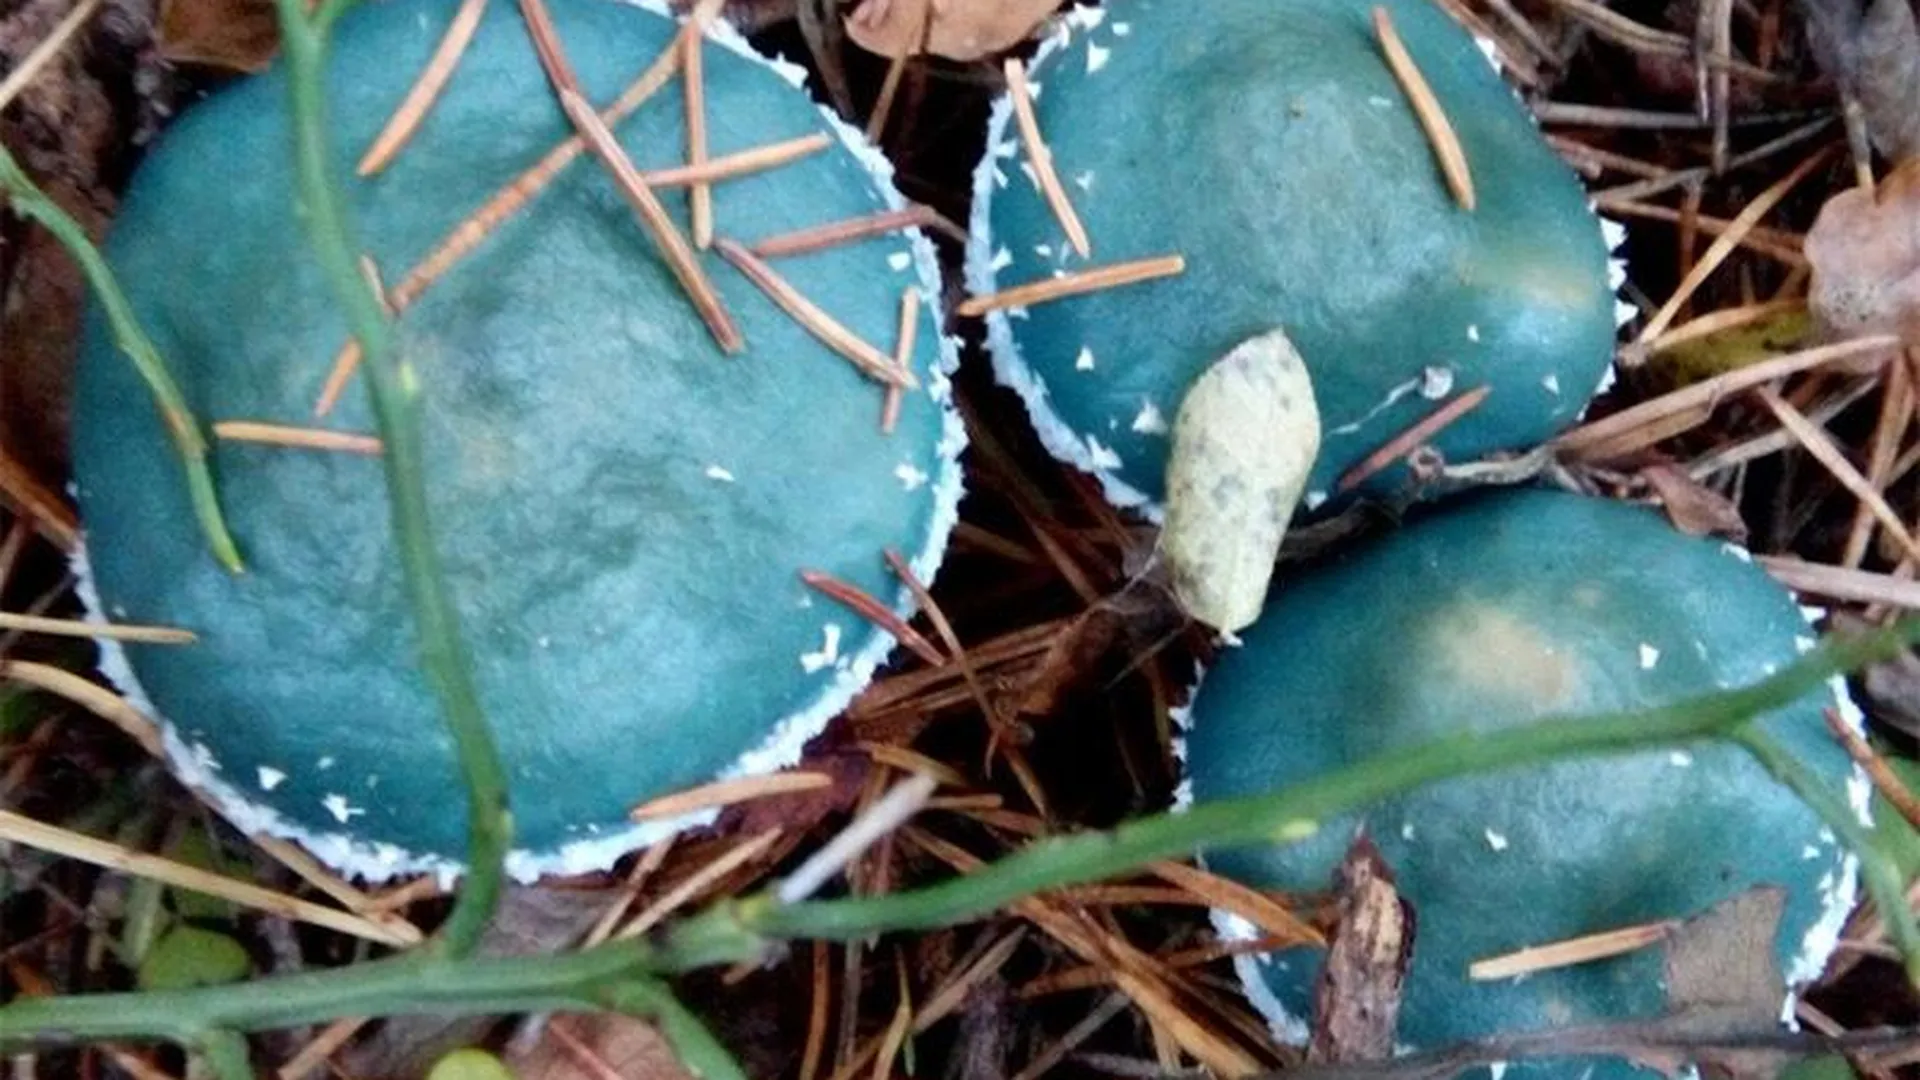 Редкий сине-зеленый гриб обнаружен в подмосковном лесу